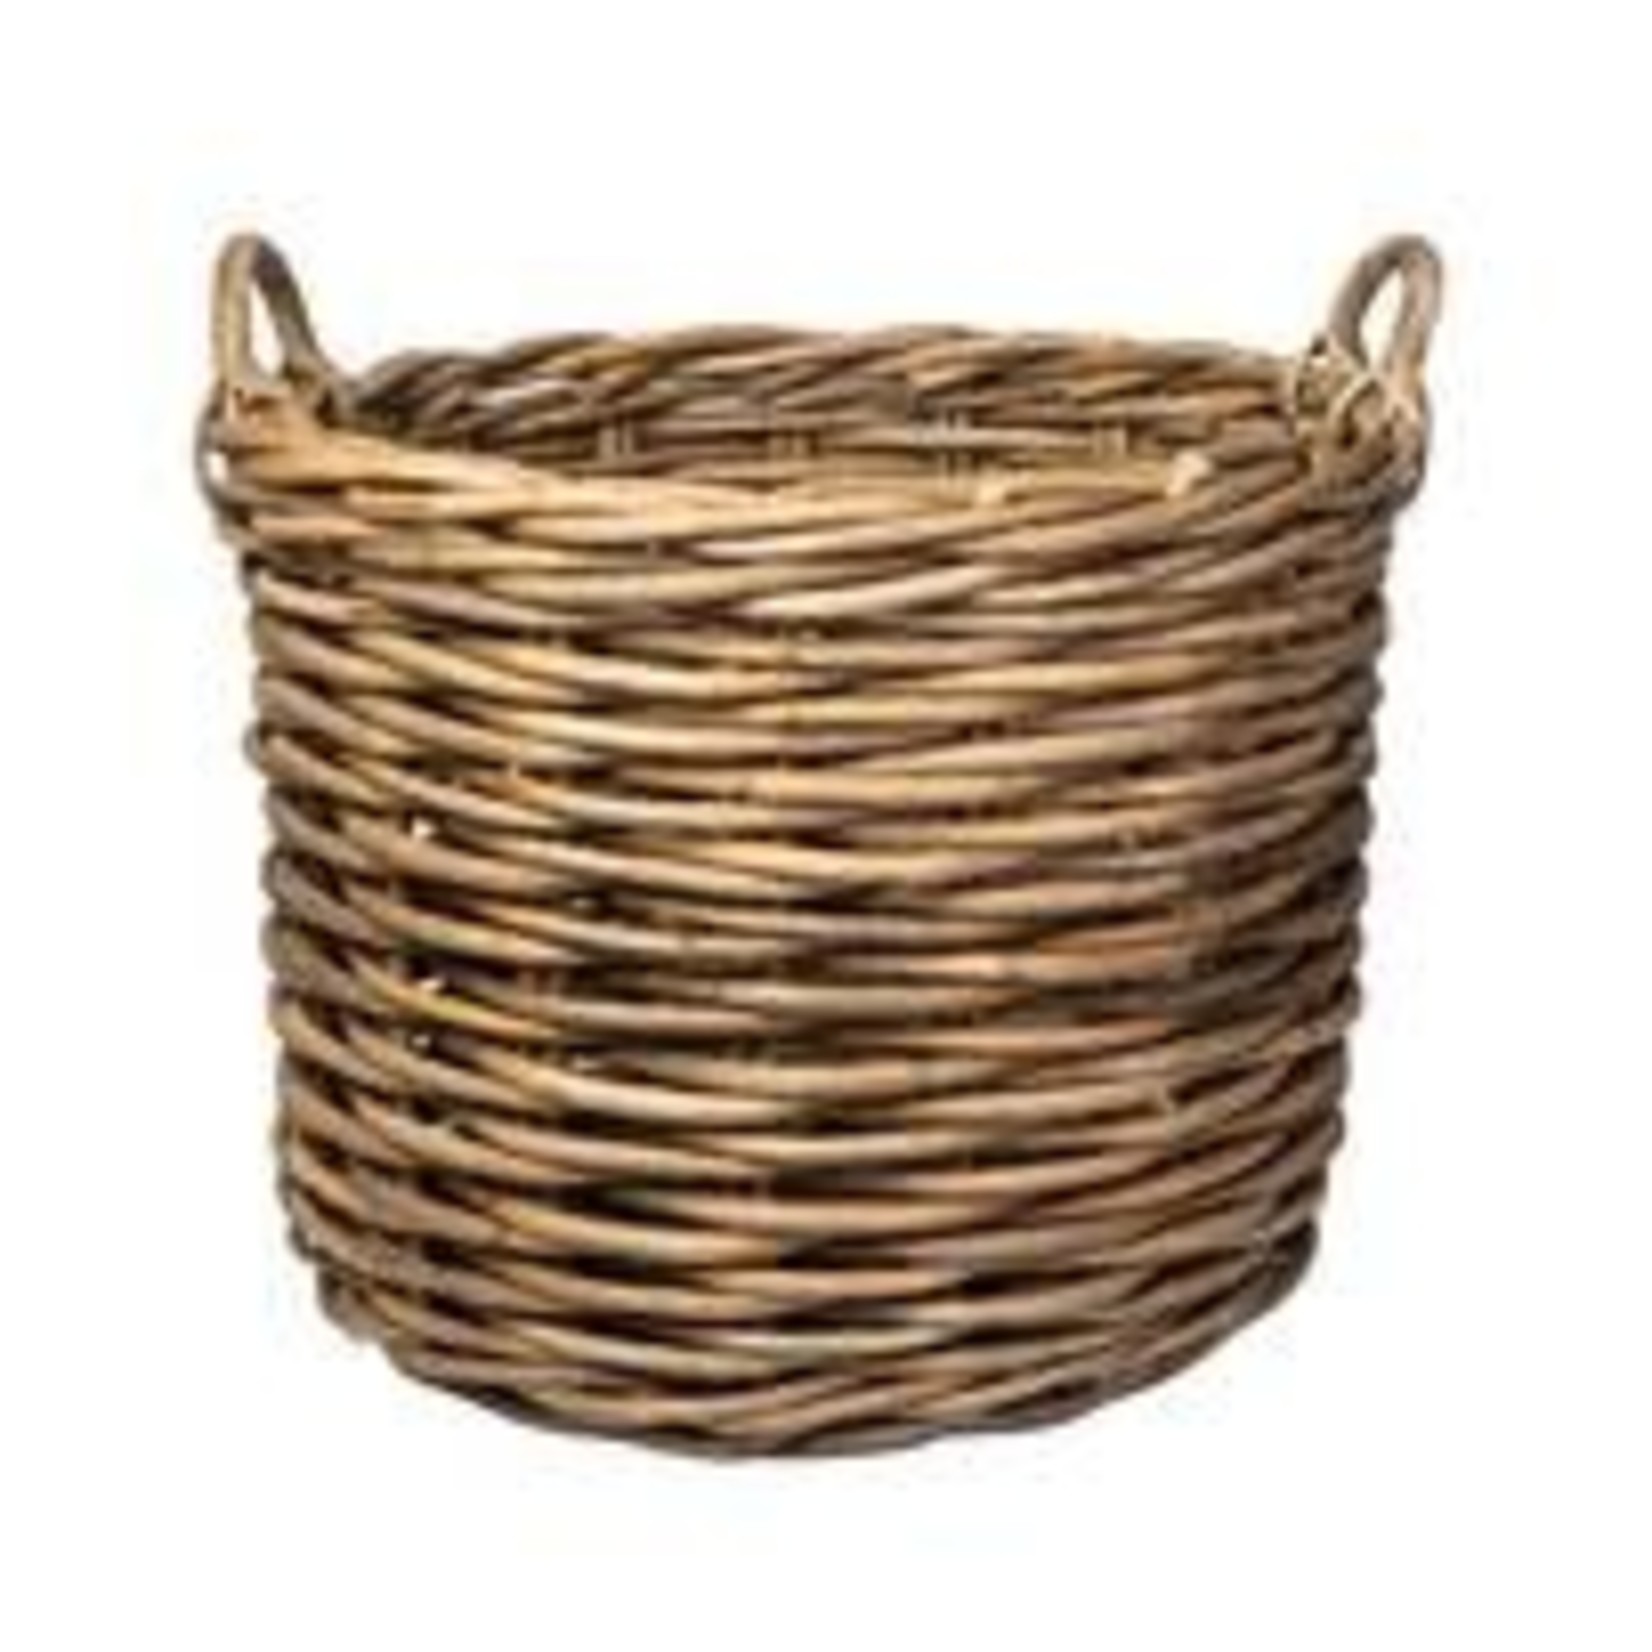 Bidk Home Medium Rattan Round Basket w/ Handles